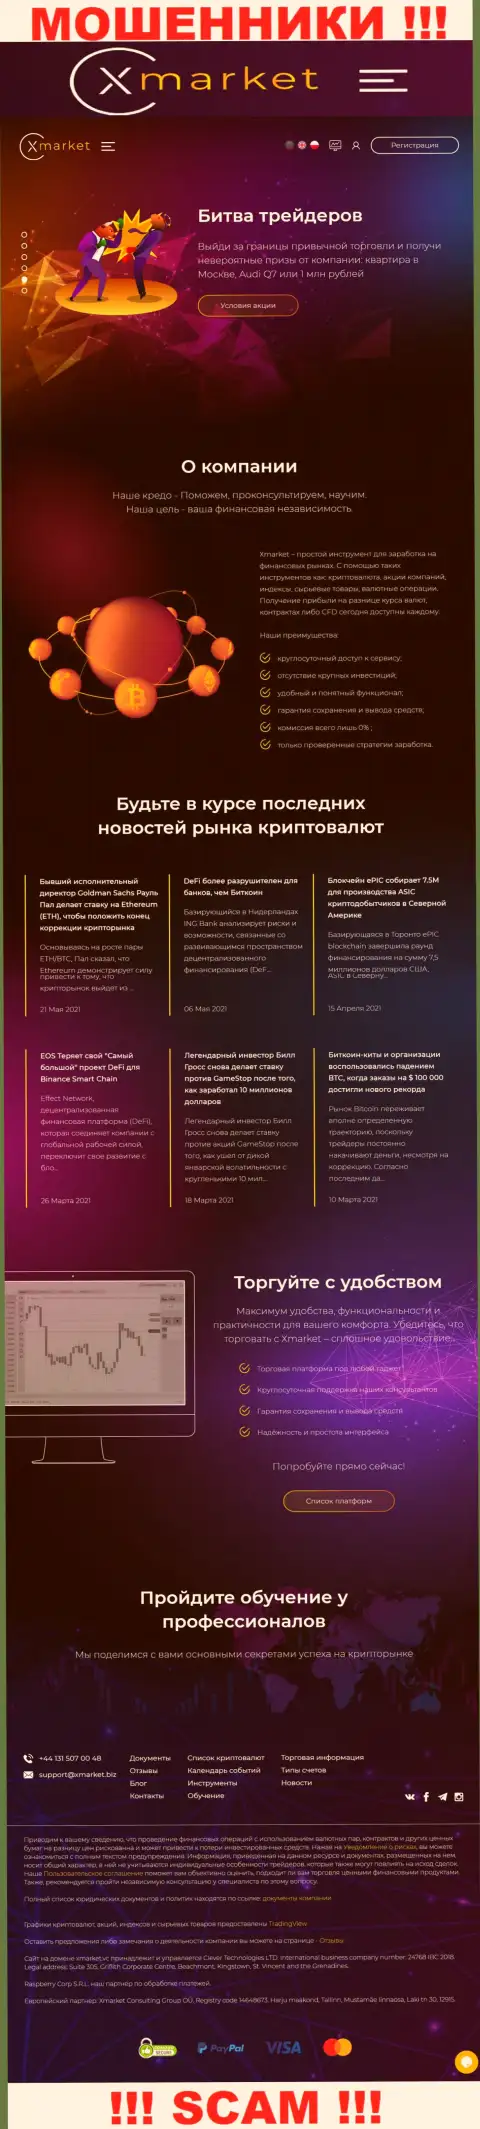 Главный веб-сервис мошенников и шулеров конторы ИксМаркет Вс